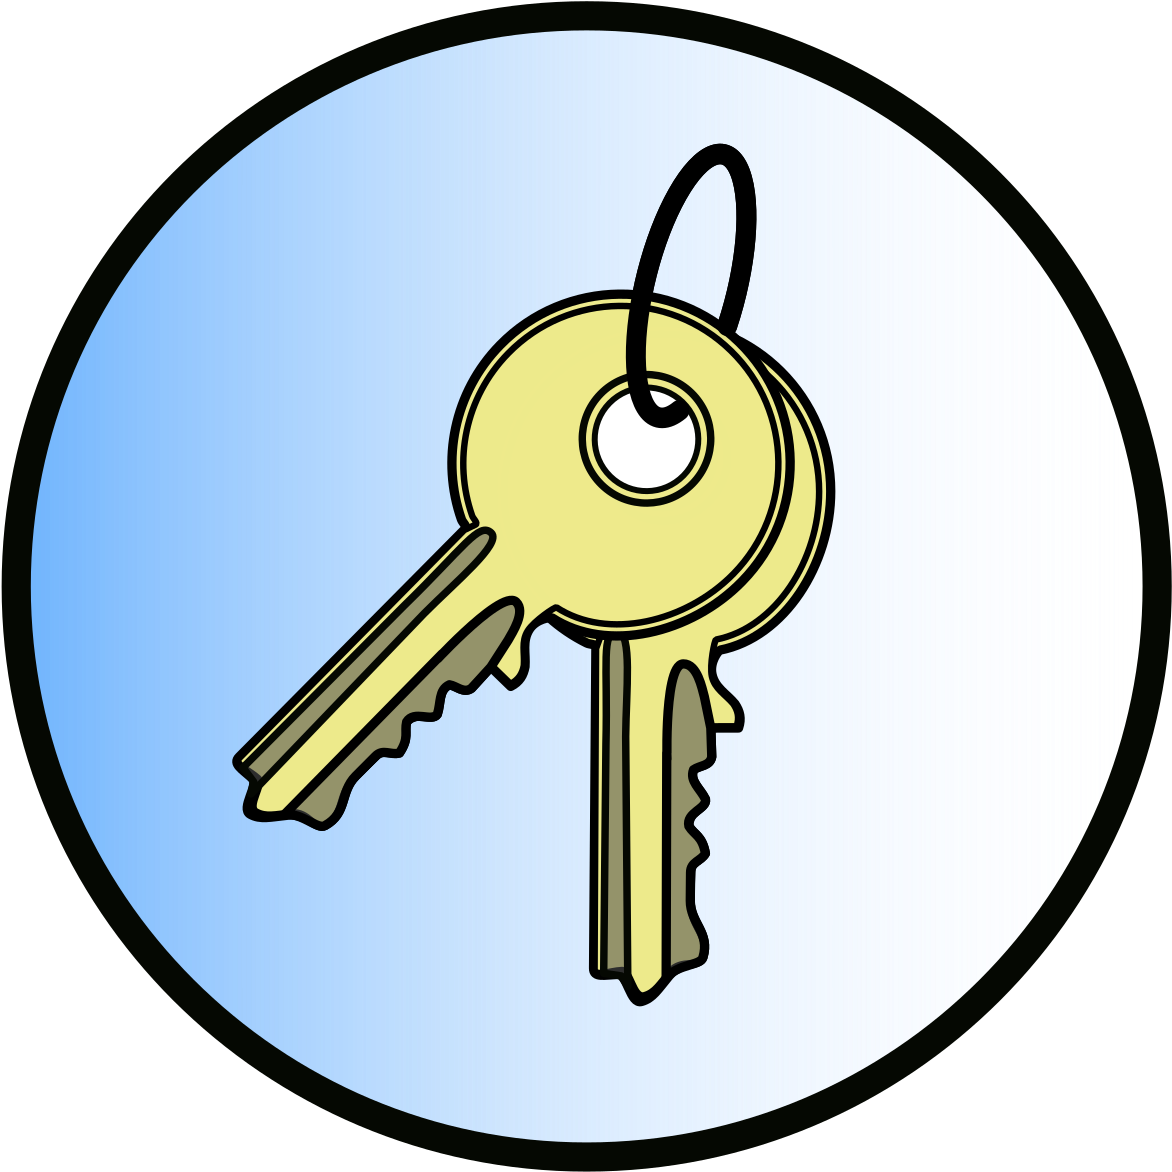 Keys Clip Art Download - Jg 300 (2400x1855)